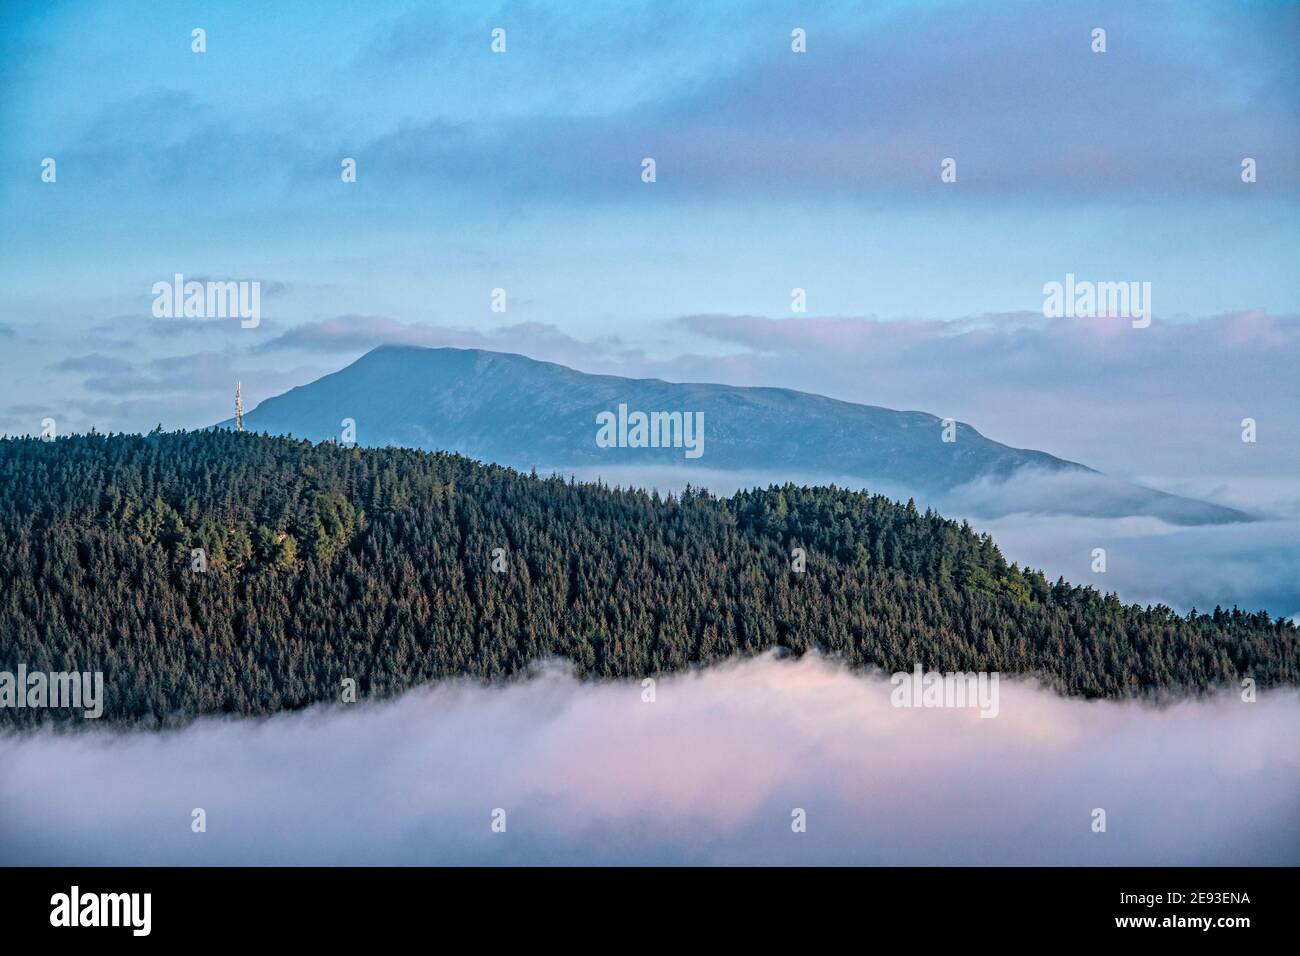 View of Schiehallion Mountain, Scotland Stock Photo